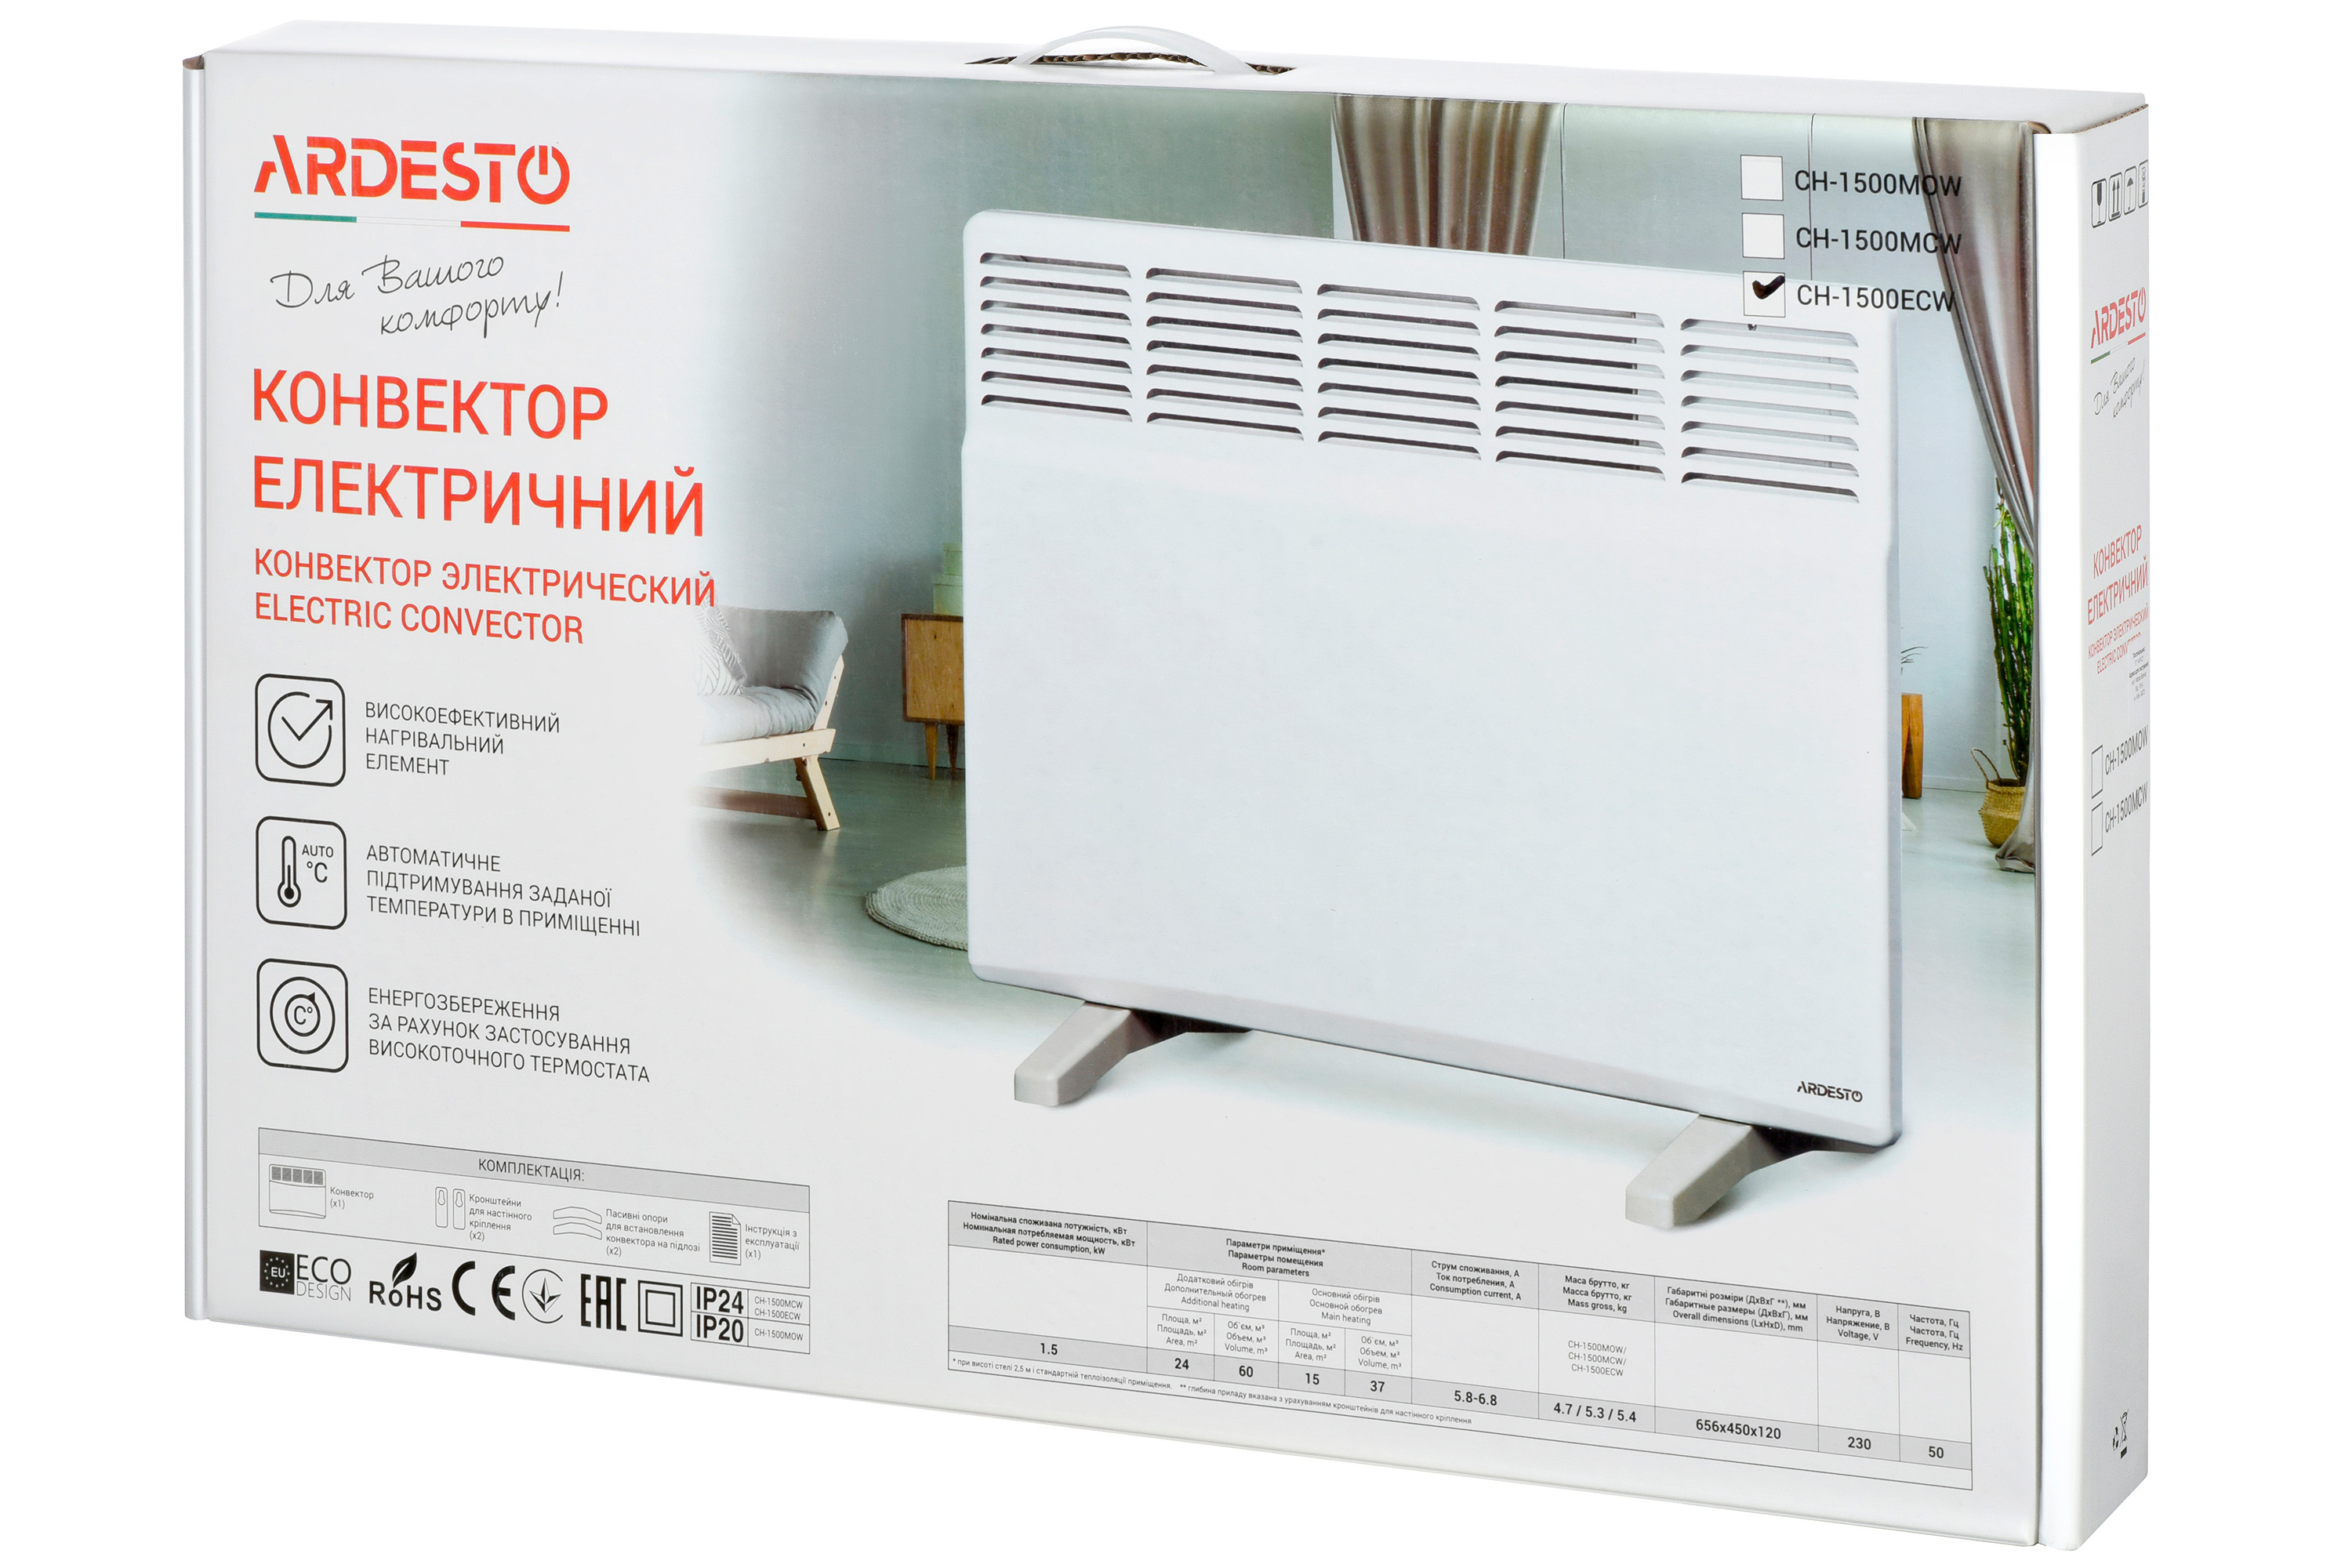 Електричний конвектор Ardesto CH-1500ECW характеристики - фотографія 7